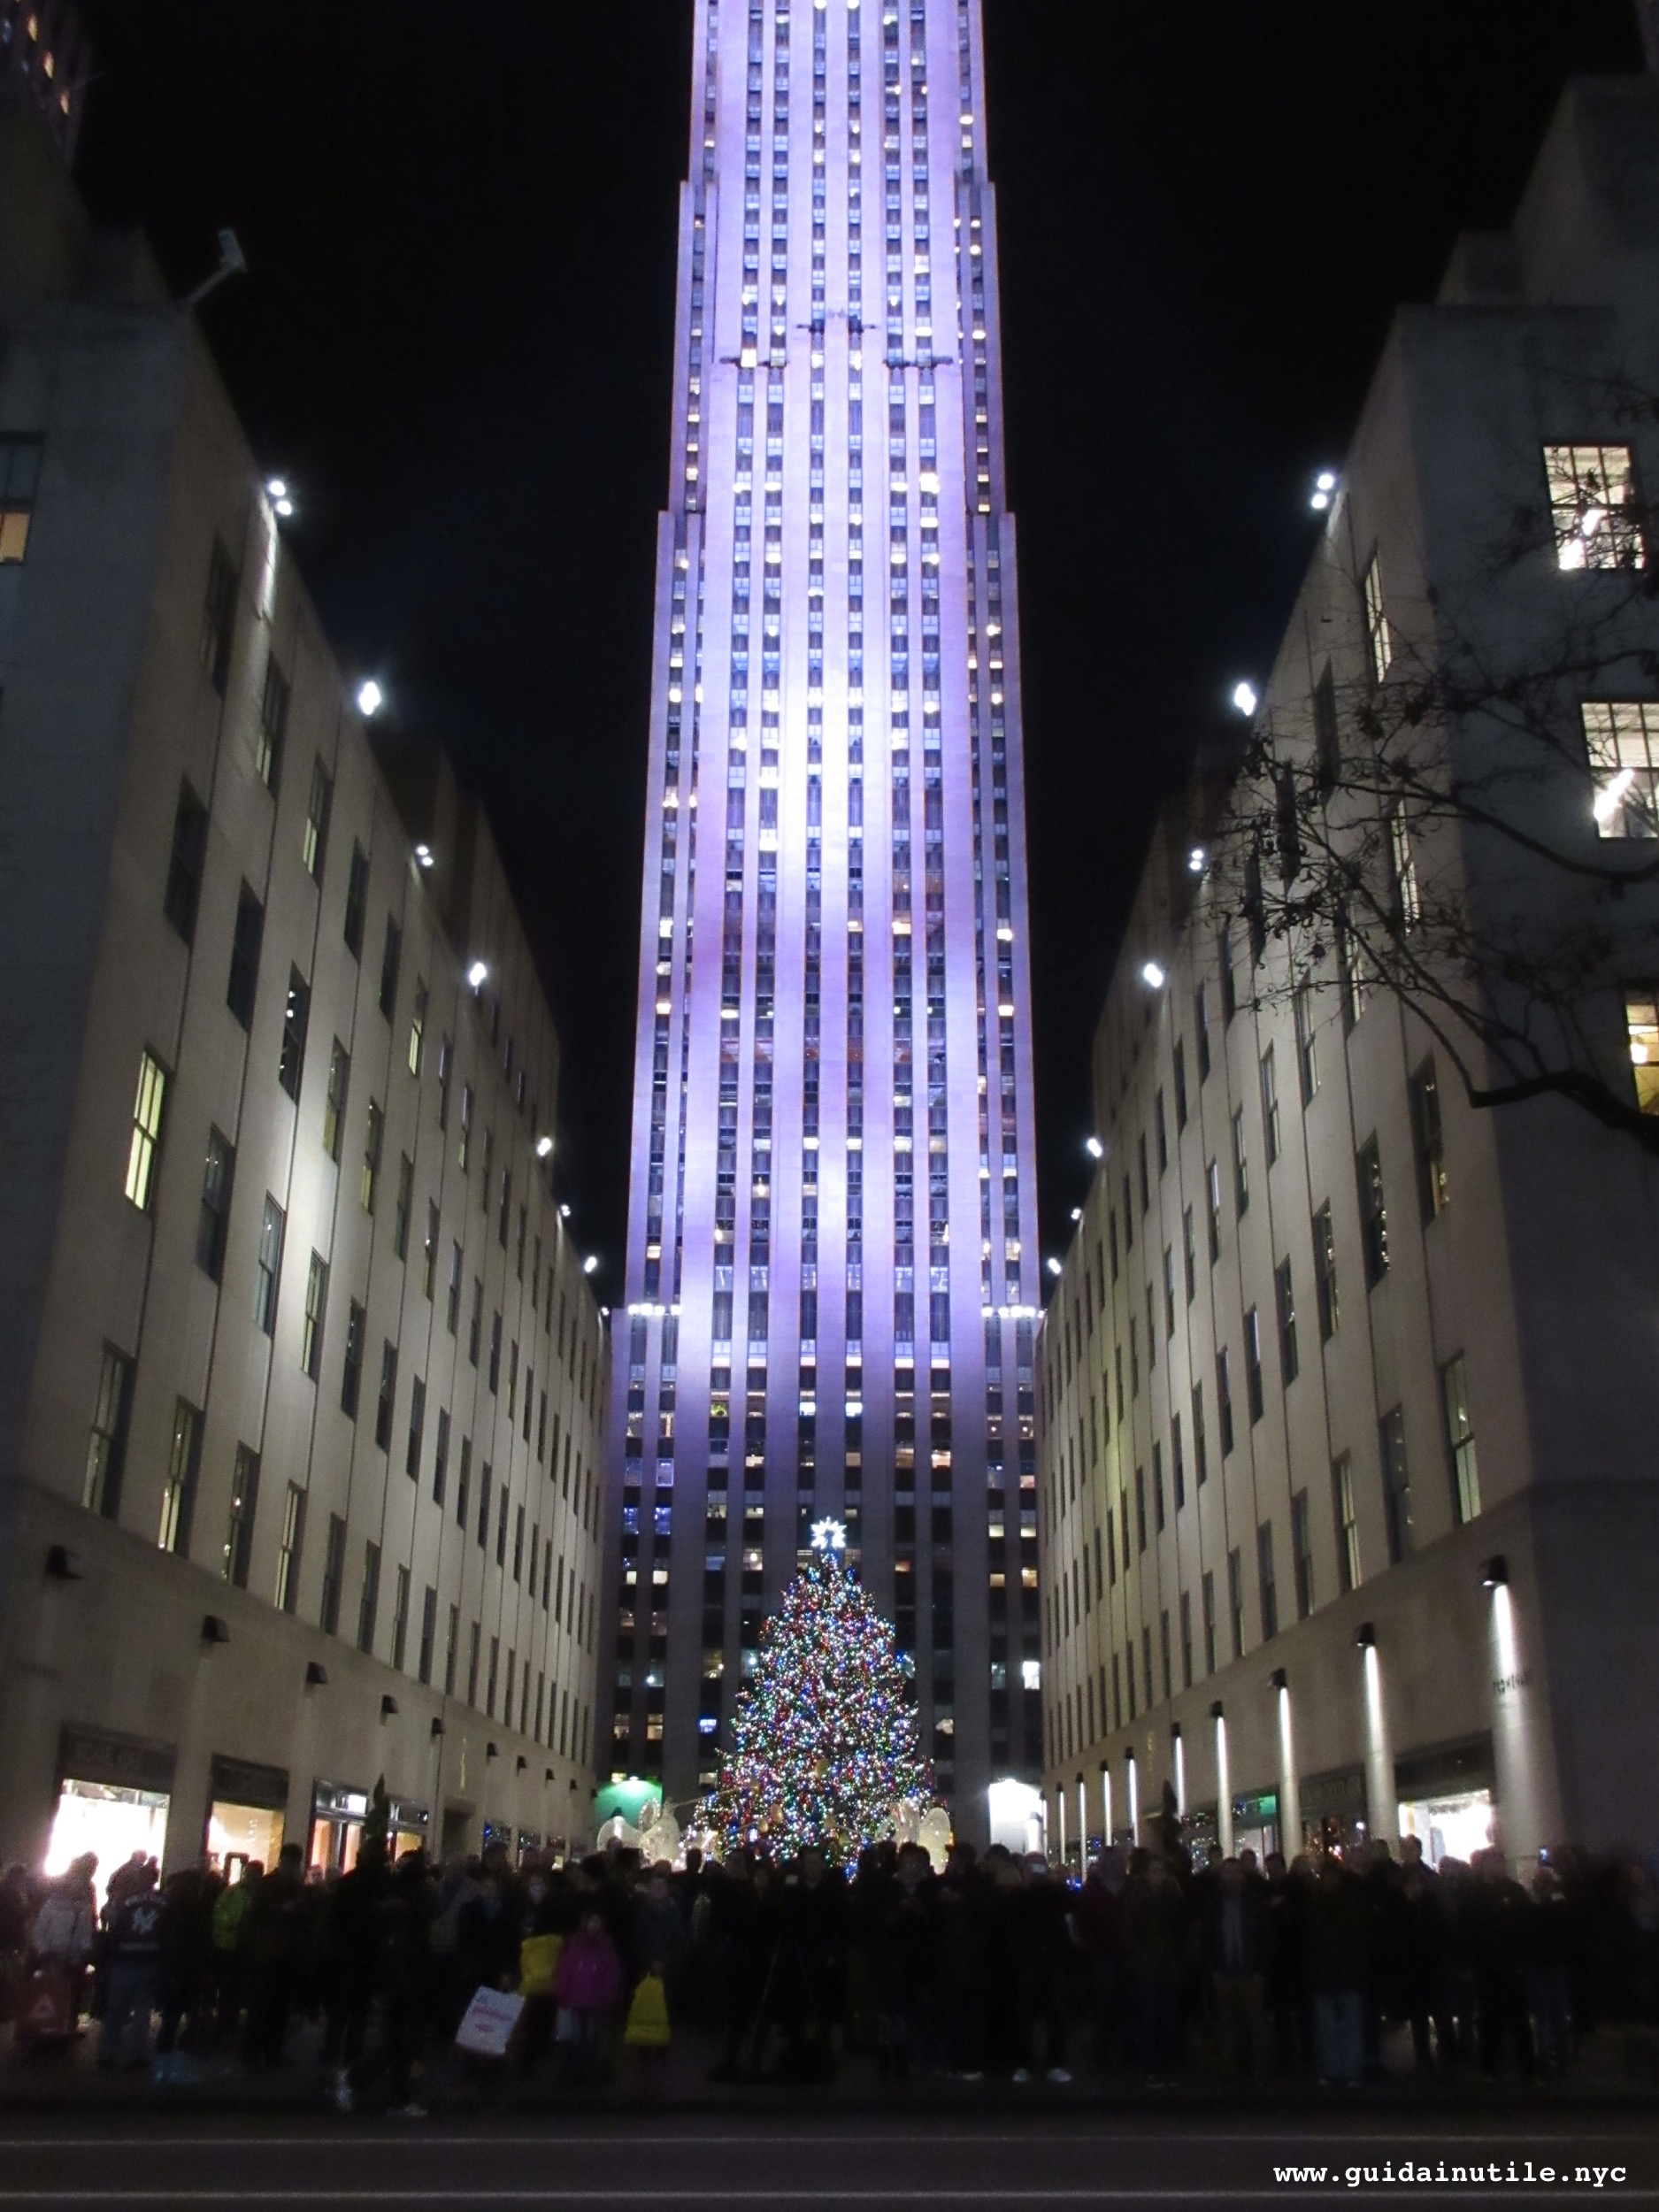 Immagini Di Natale New York.Natale A New York Tra Hanukkah Kwanzaa E Luci Italiane Guida Inutile New York